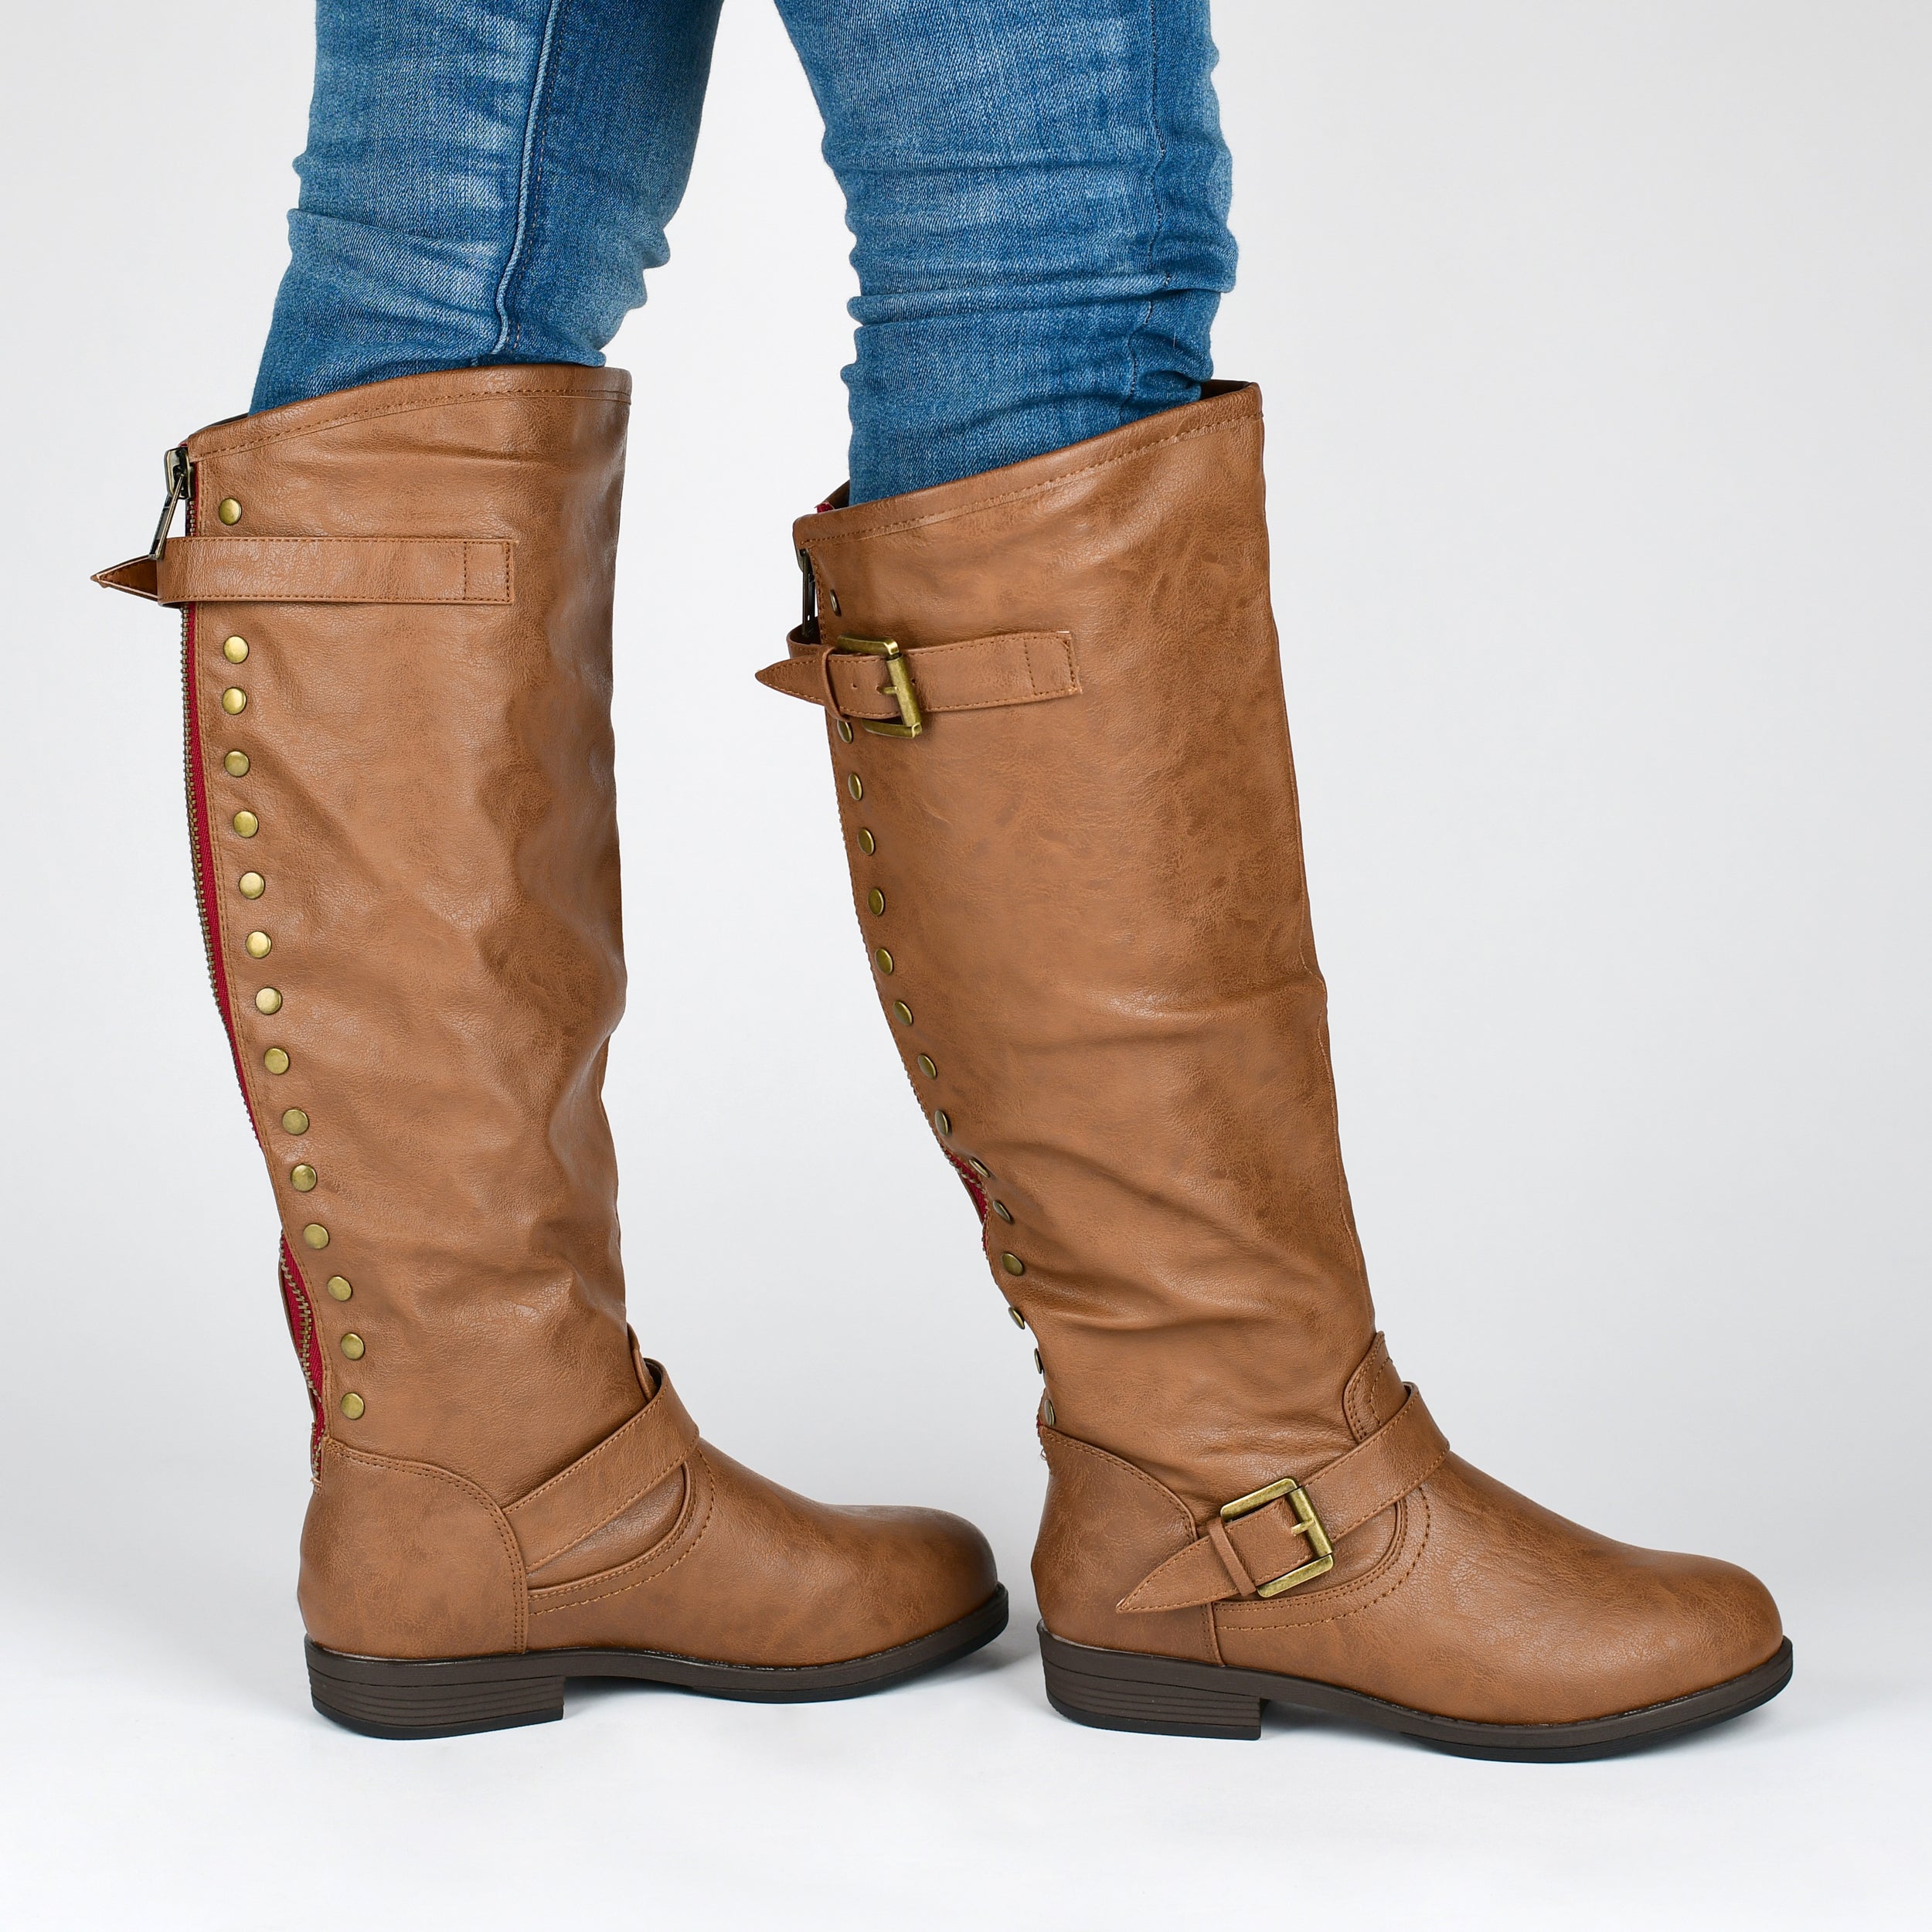 Spokane Bootie | Women's Faux Leather Riding Boots | Journee